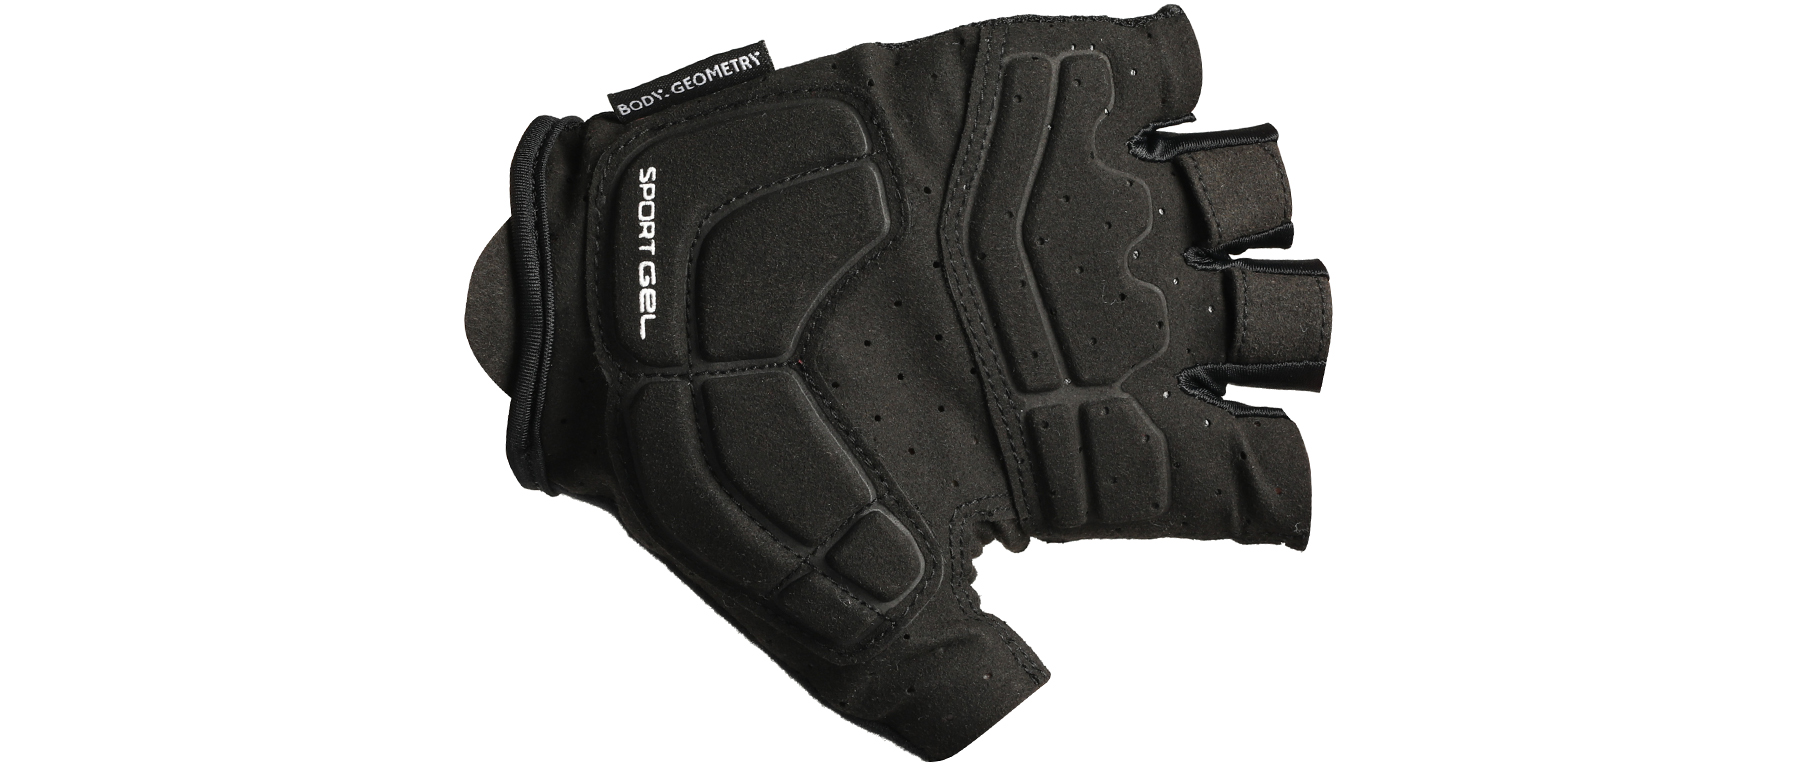 Specialized Body Geometry Sport Gel Glove